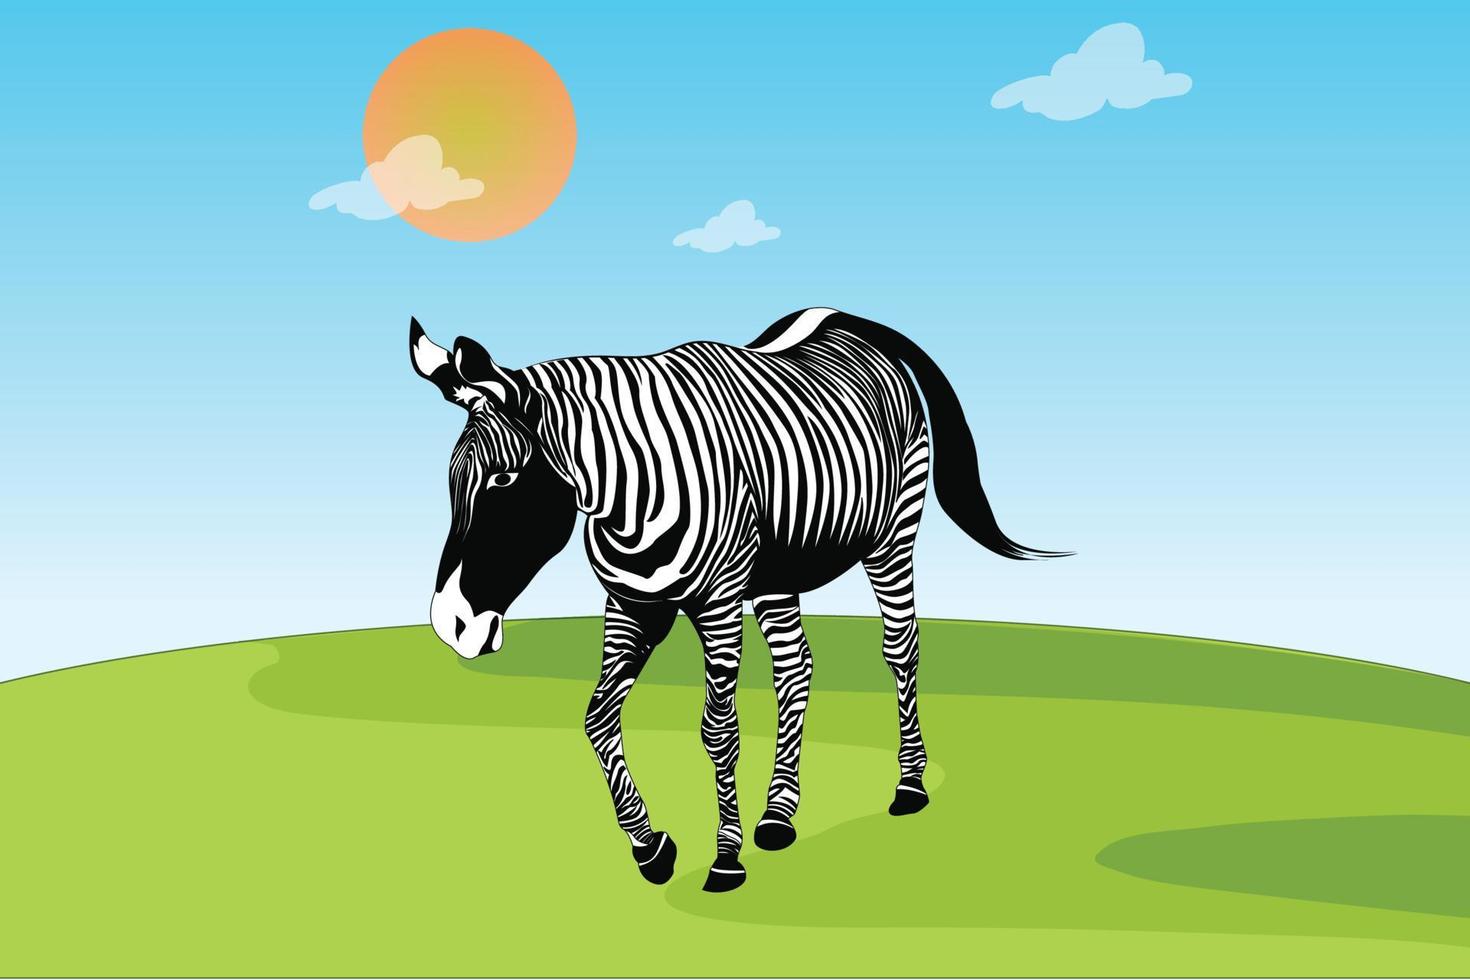 zebra adulta em posição de caminhada vetor grátis